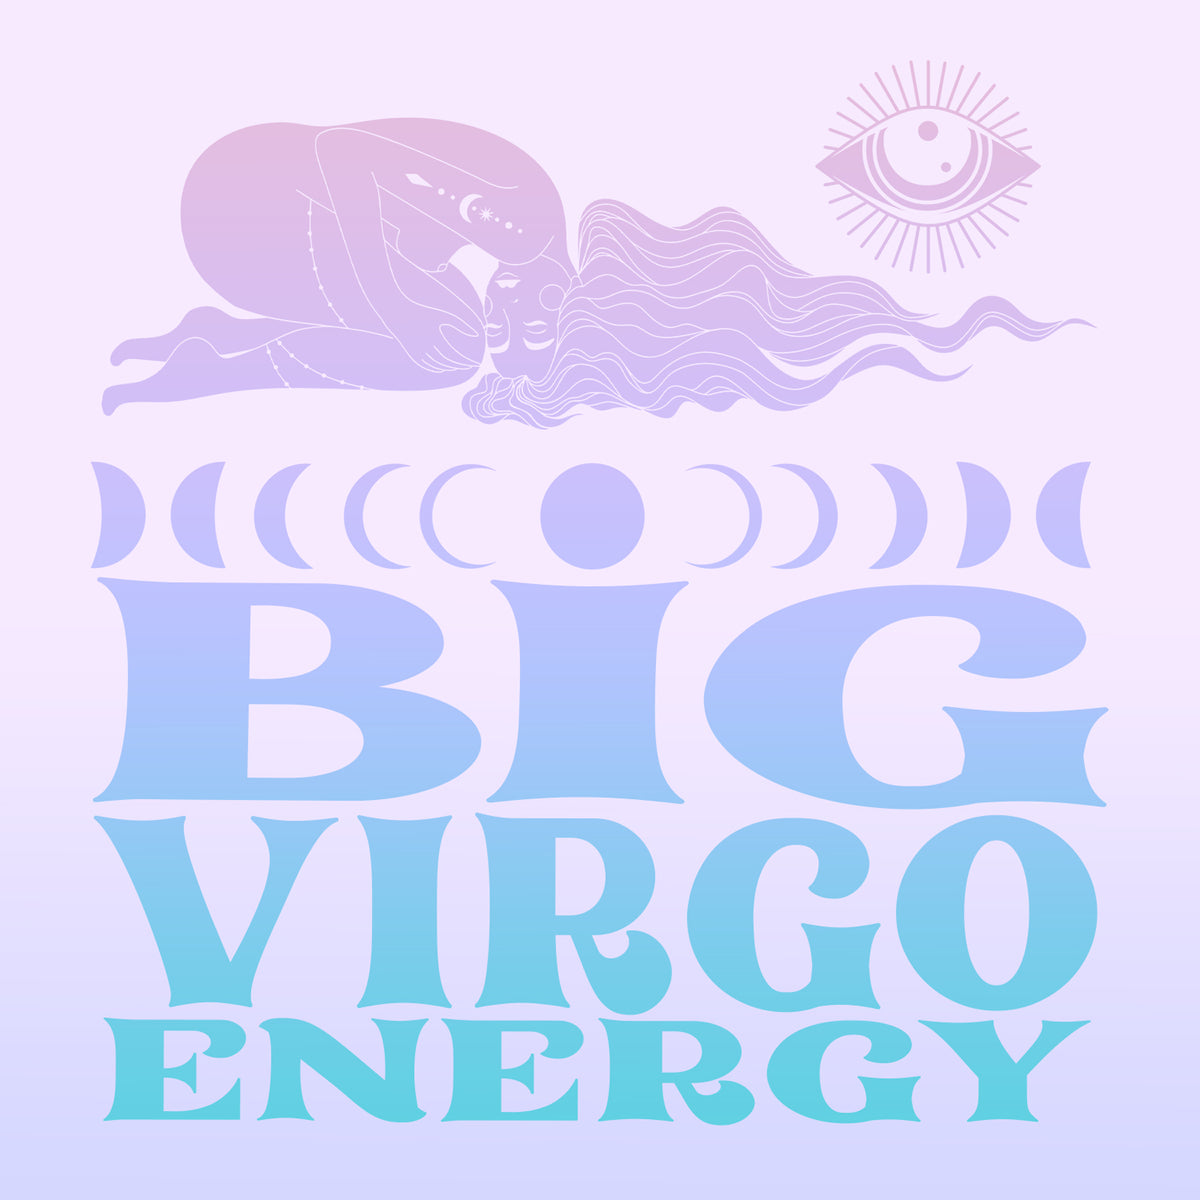 Big Virgo Energy Zodiac Gift Box Set